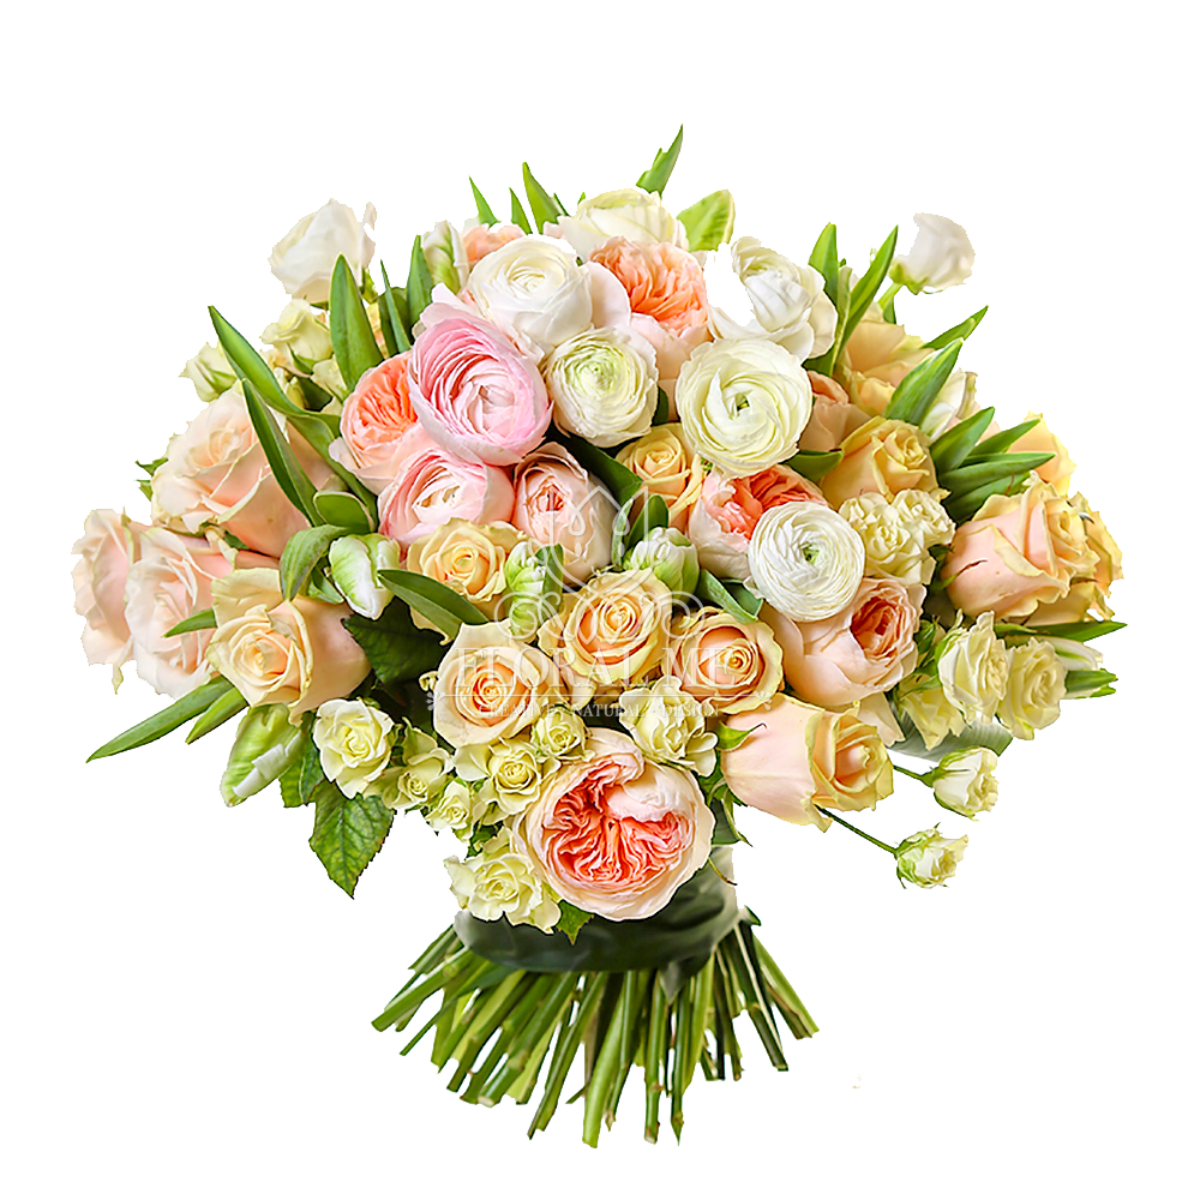 Colorful Rose Bridal Bouquet